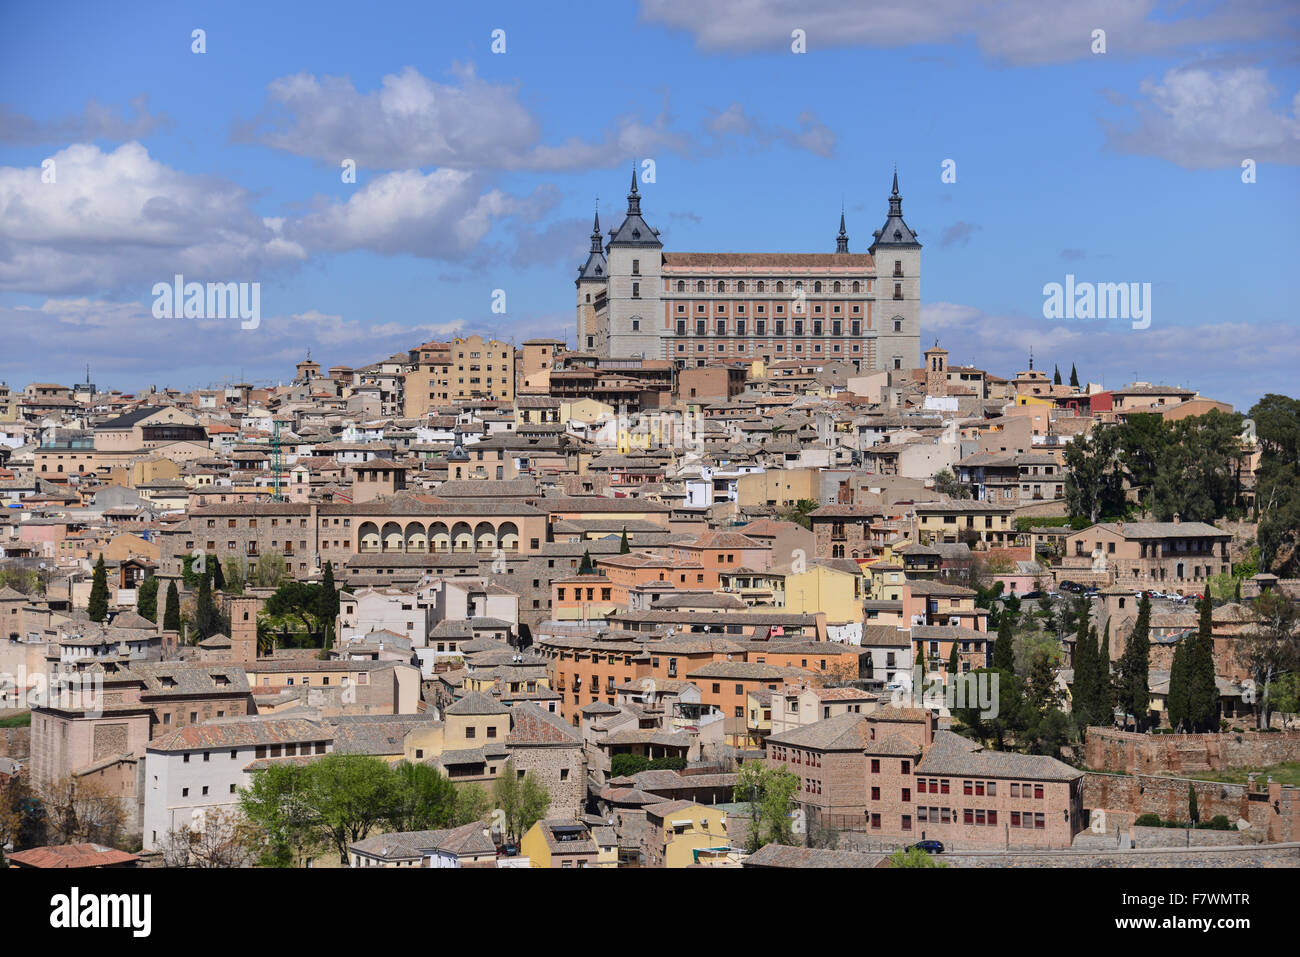 City View of Toledo, Spain Stock Photo